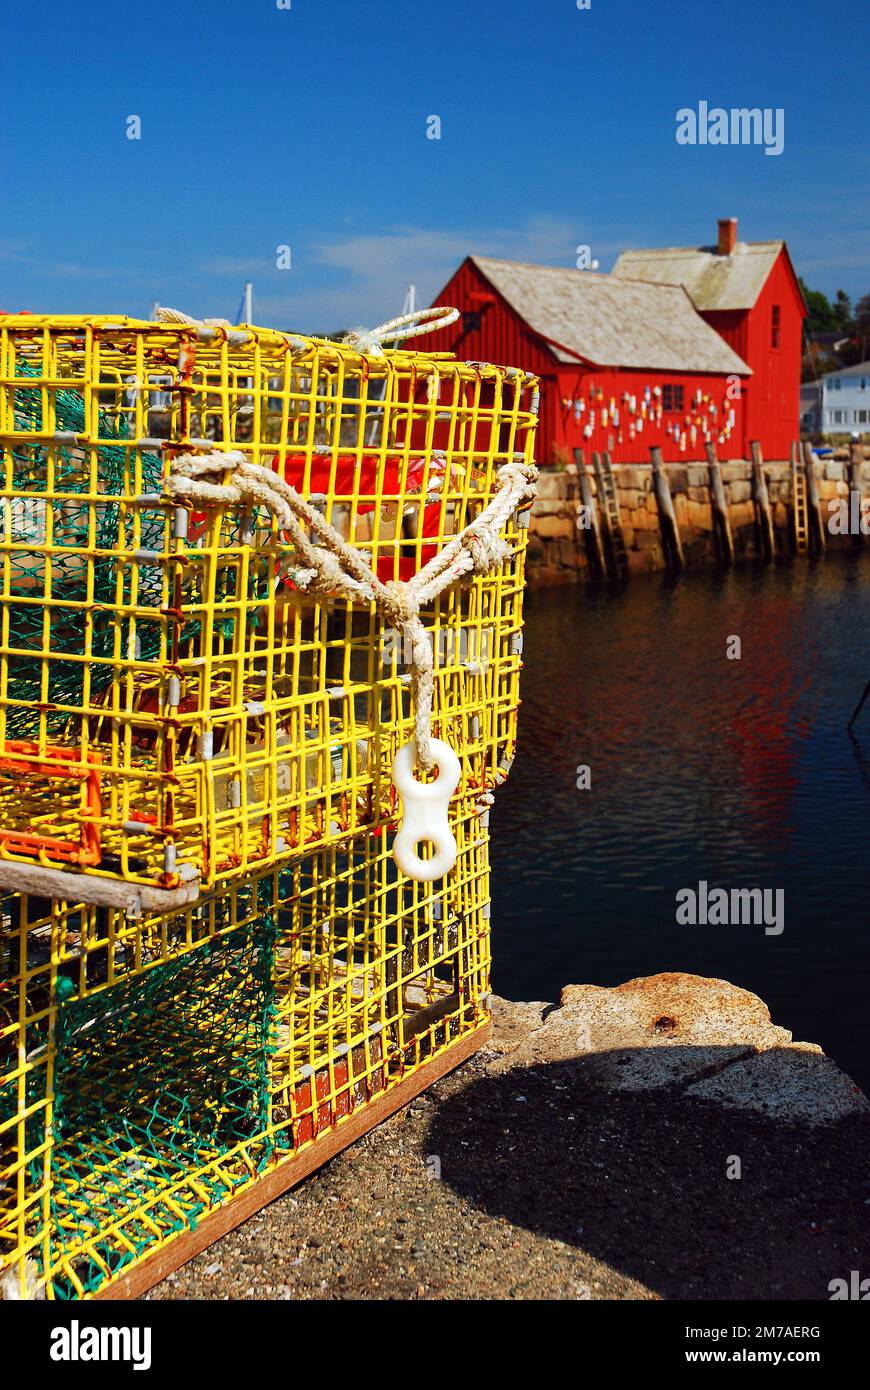 Am Rand des Wassers stehen gelbe Hummerfallen in der Nähe einer roten Fischerhütte im Hafen von Rockport, Massachusetts, das als Motiv Nr. 1 bekannt ist Stockfoto